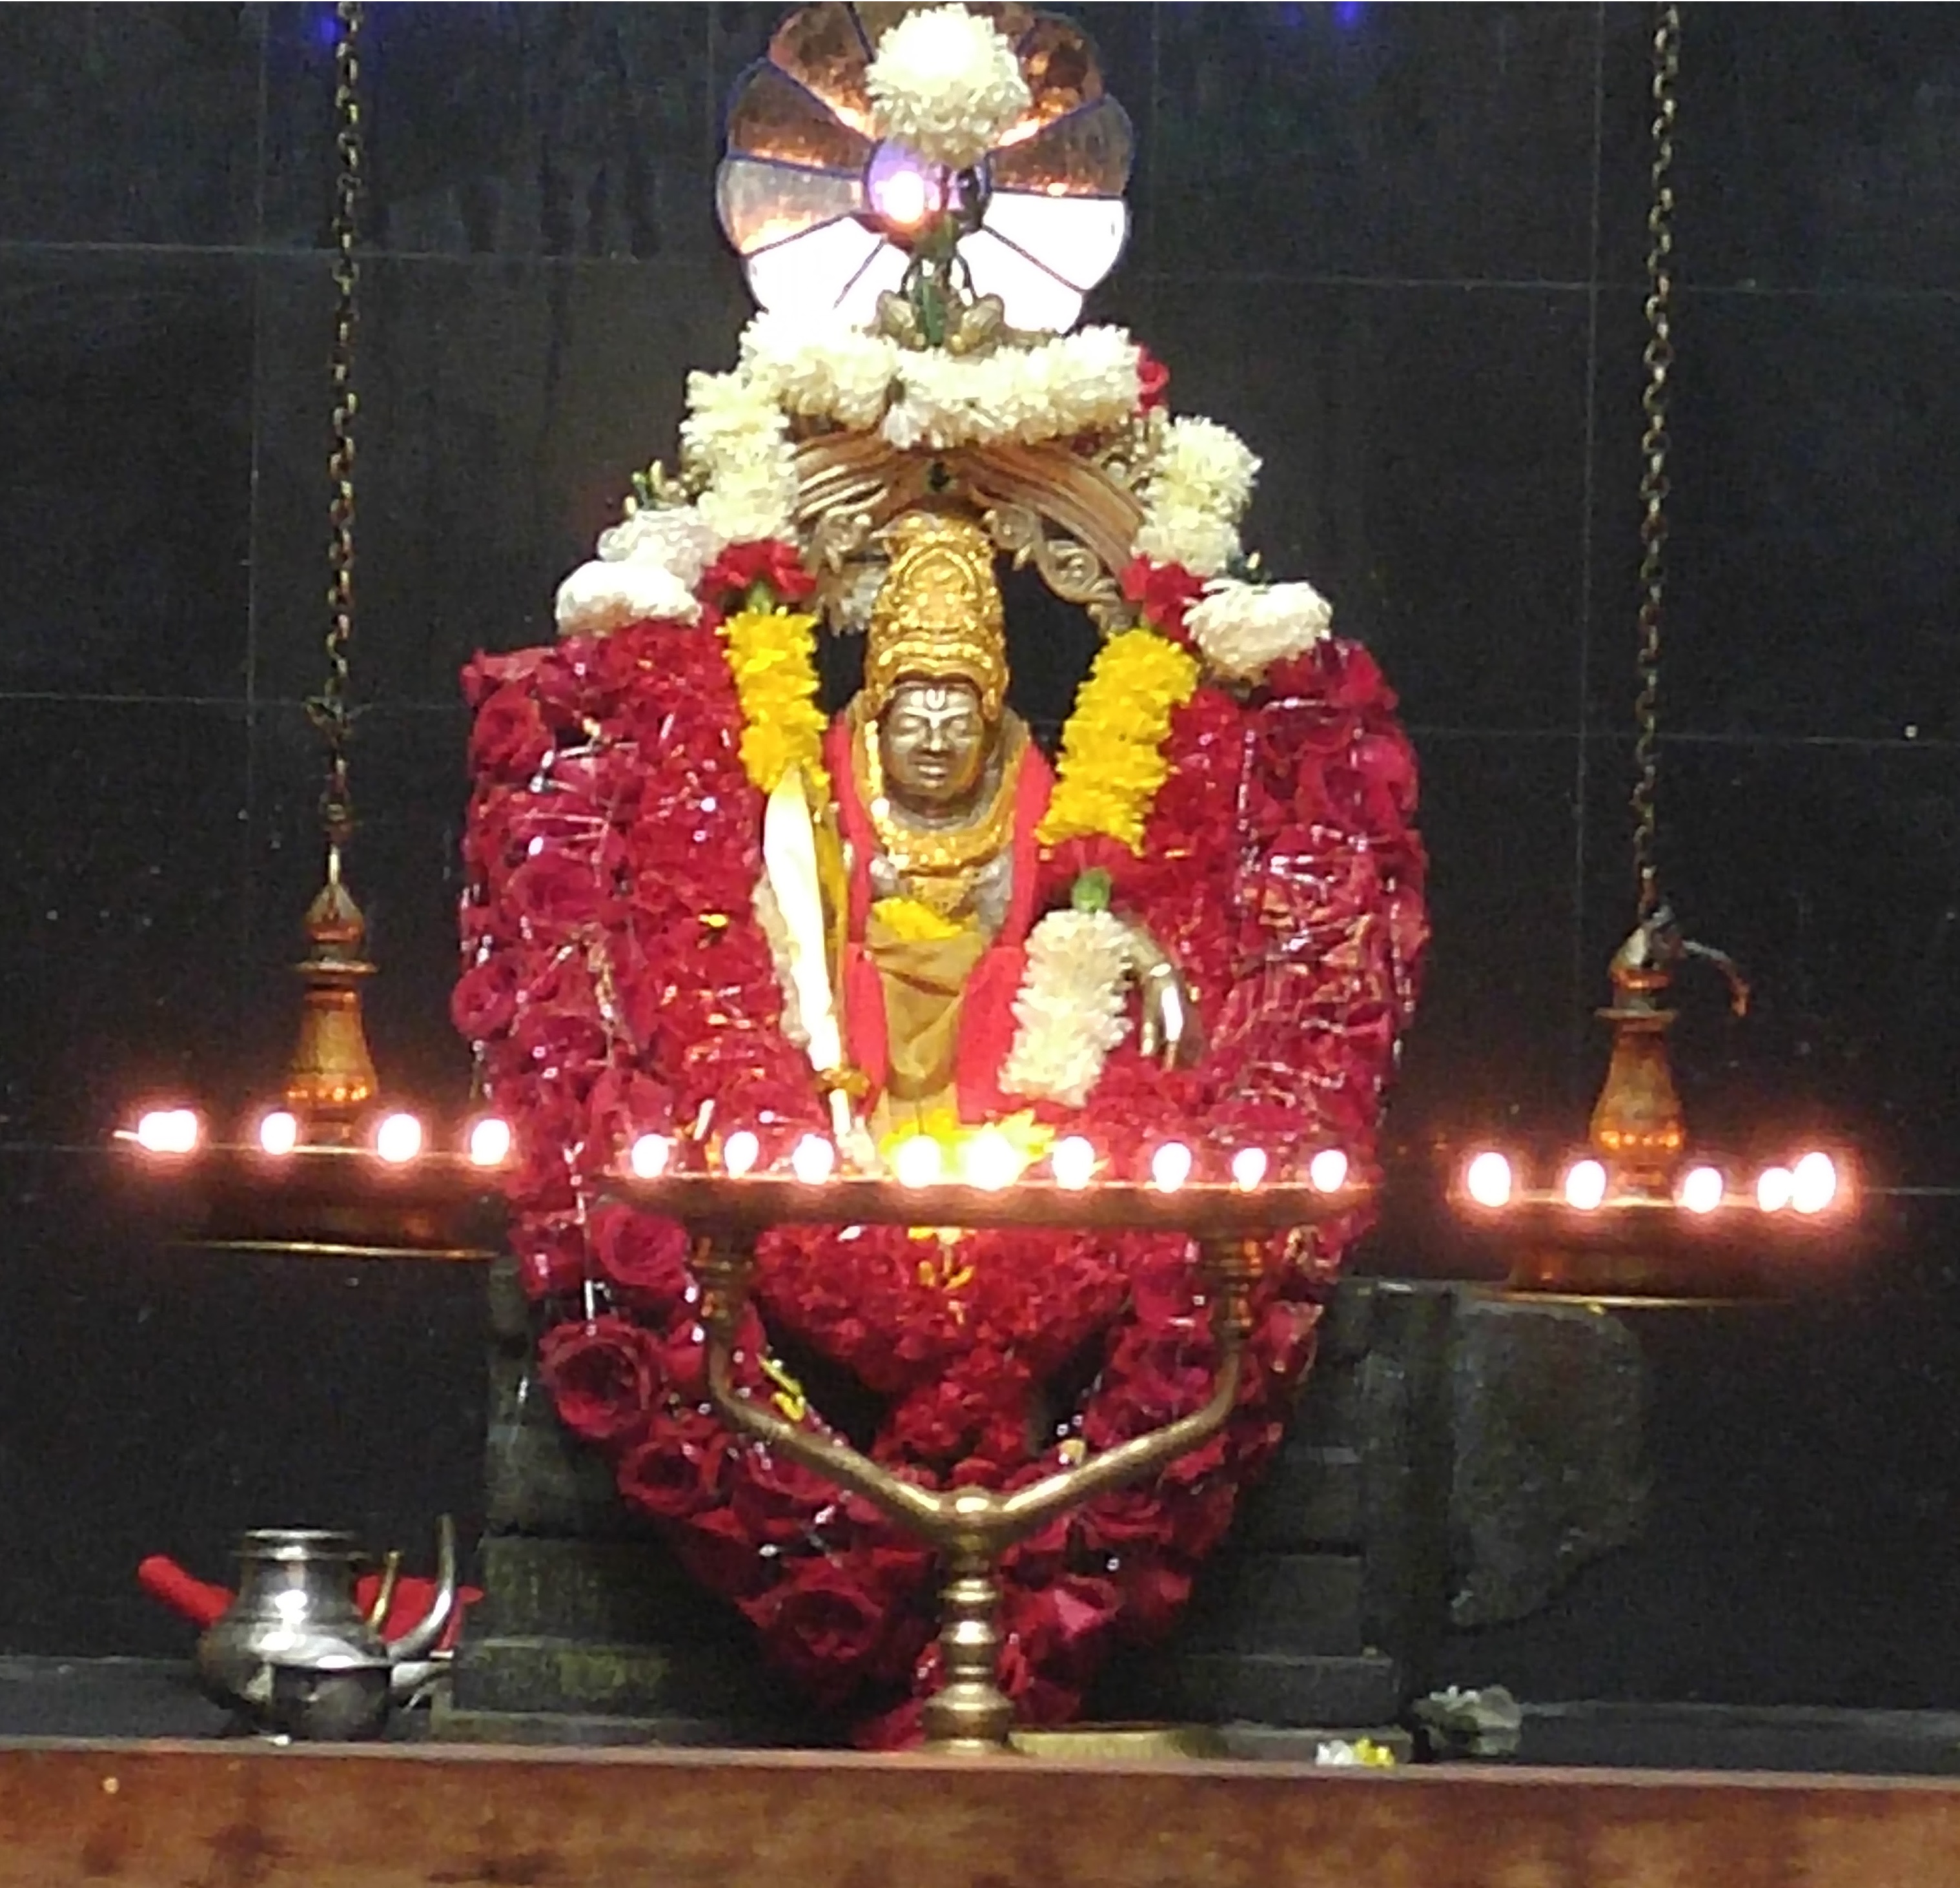 Sri Ayyappa